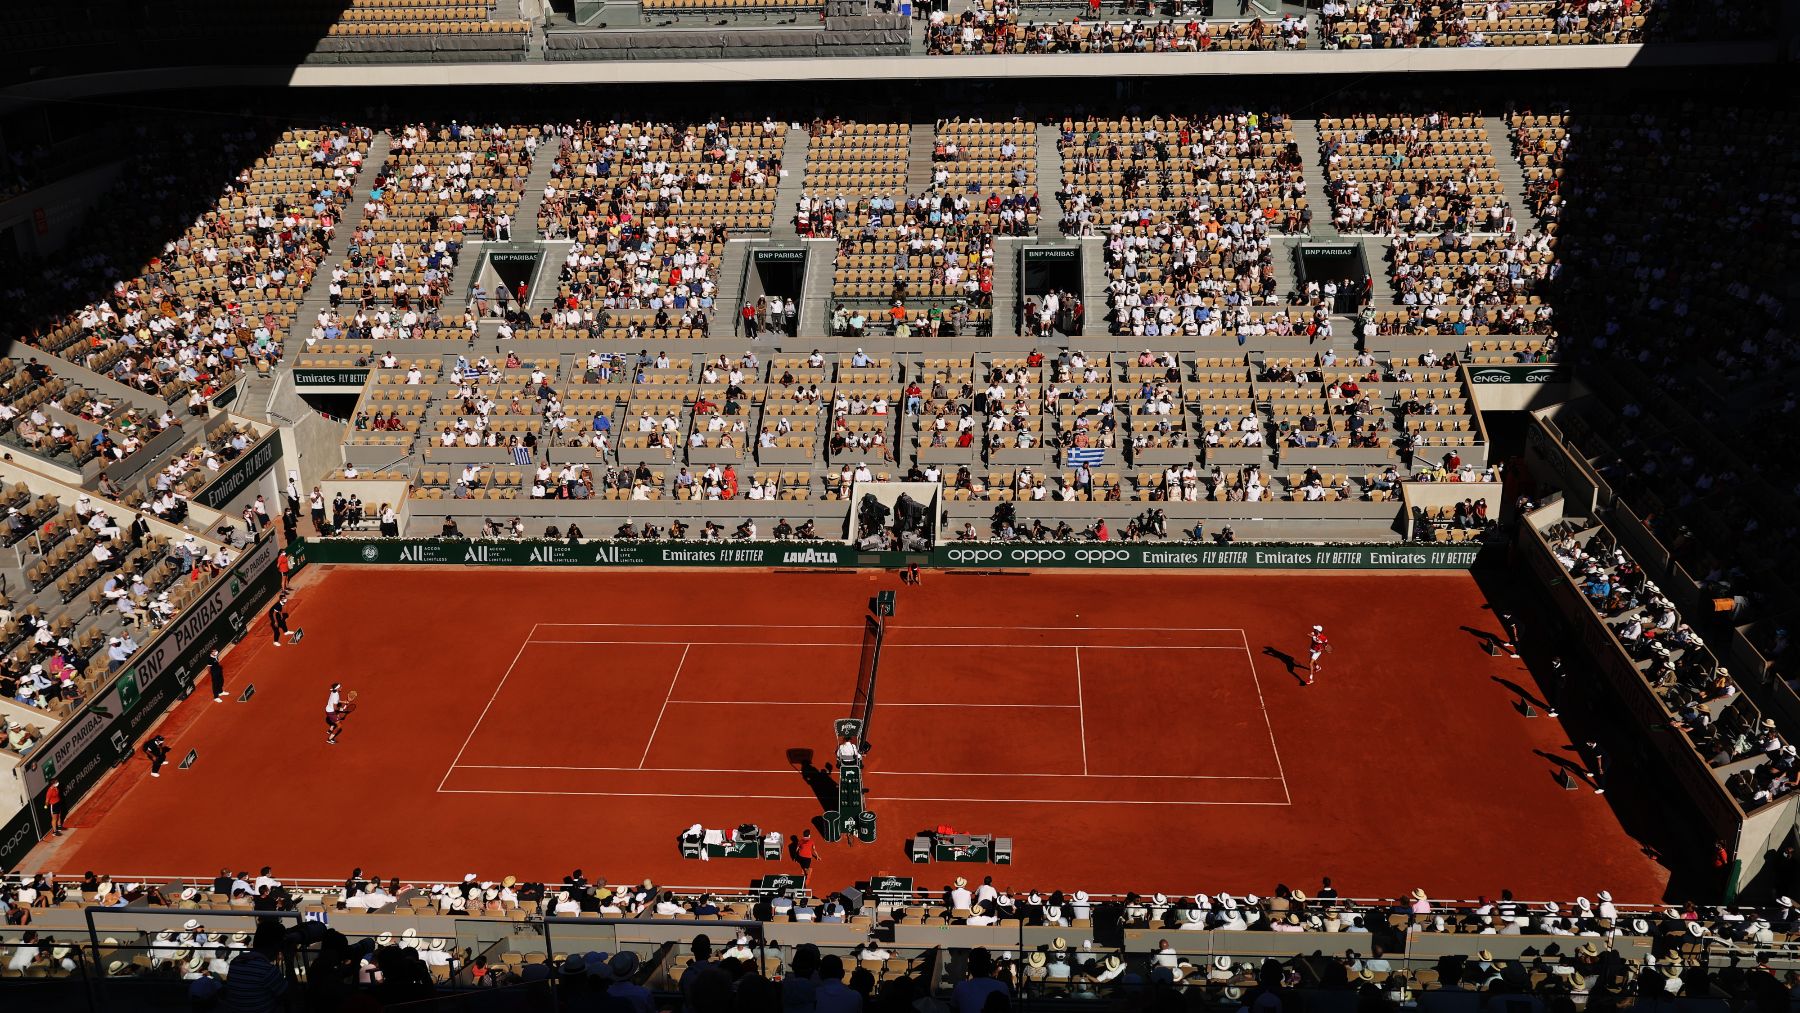 ¿Cuánto cuesta una entrada para el Roland Garros